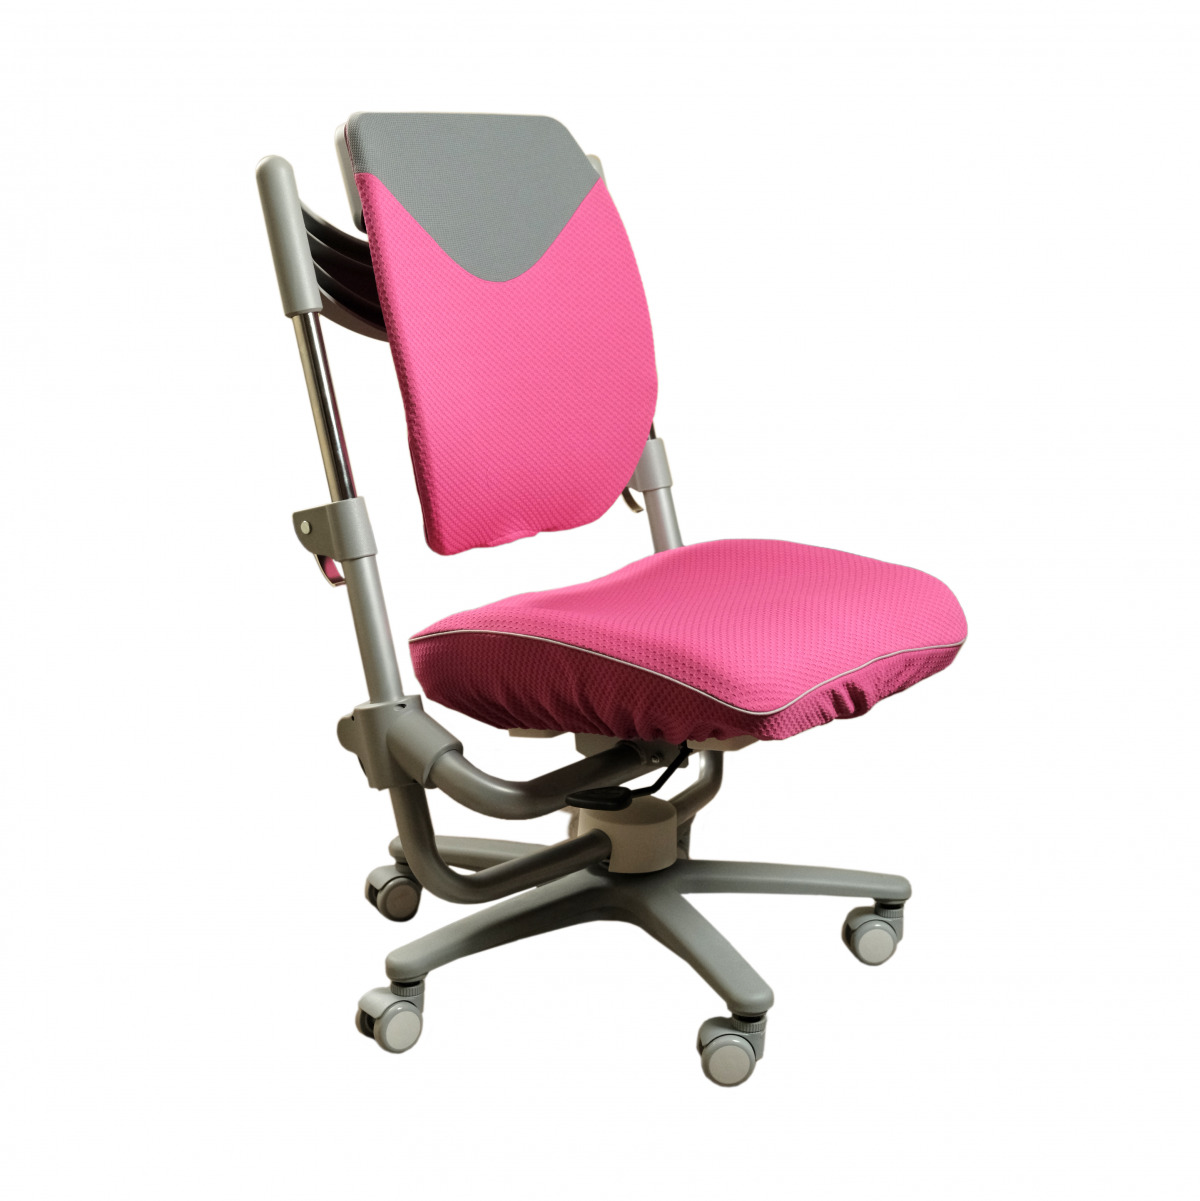 материалы, подходящие для чехла кресла